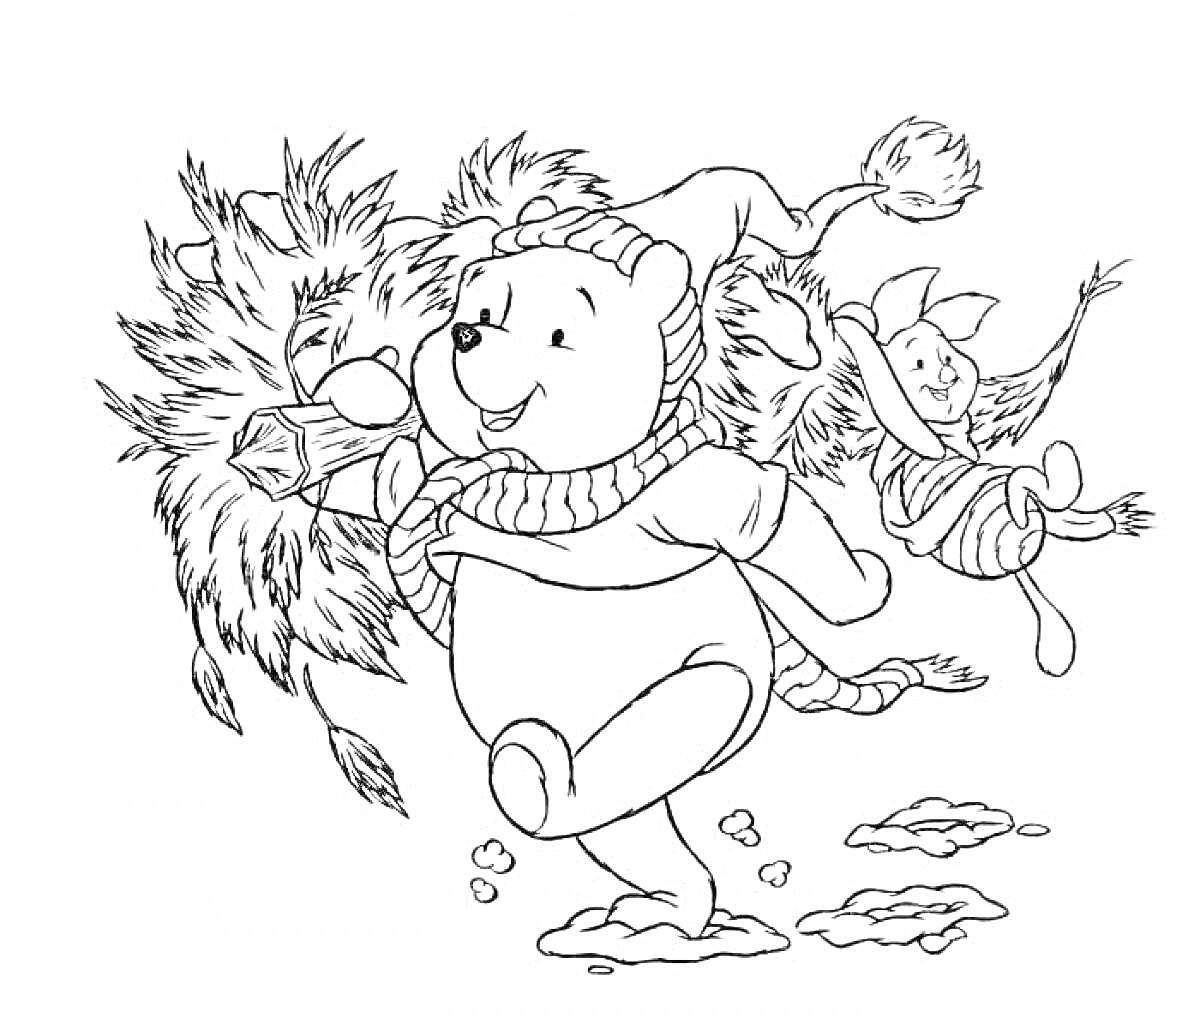 Раскраска Винни-Пух и друзья несут новогоднюю ёлку, в снегу, в шапках и шарфах